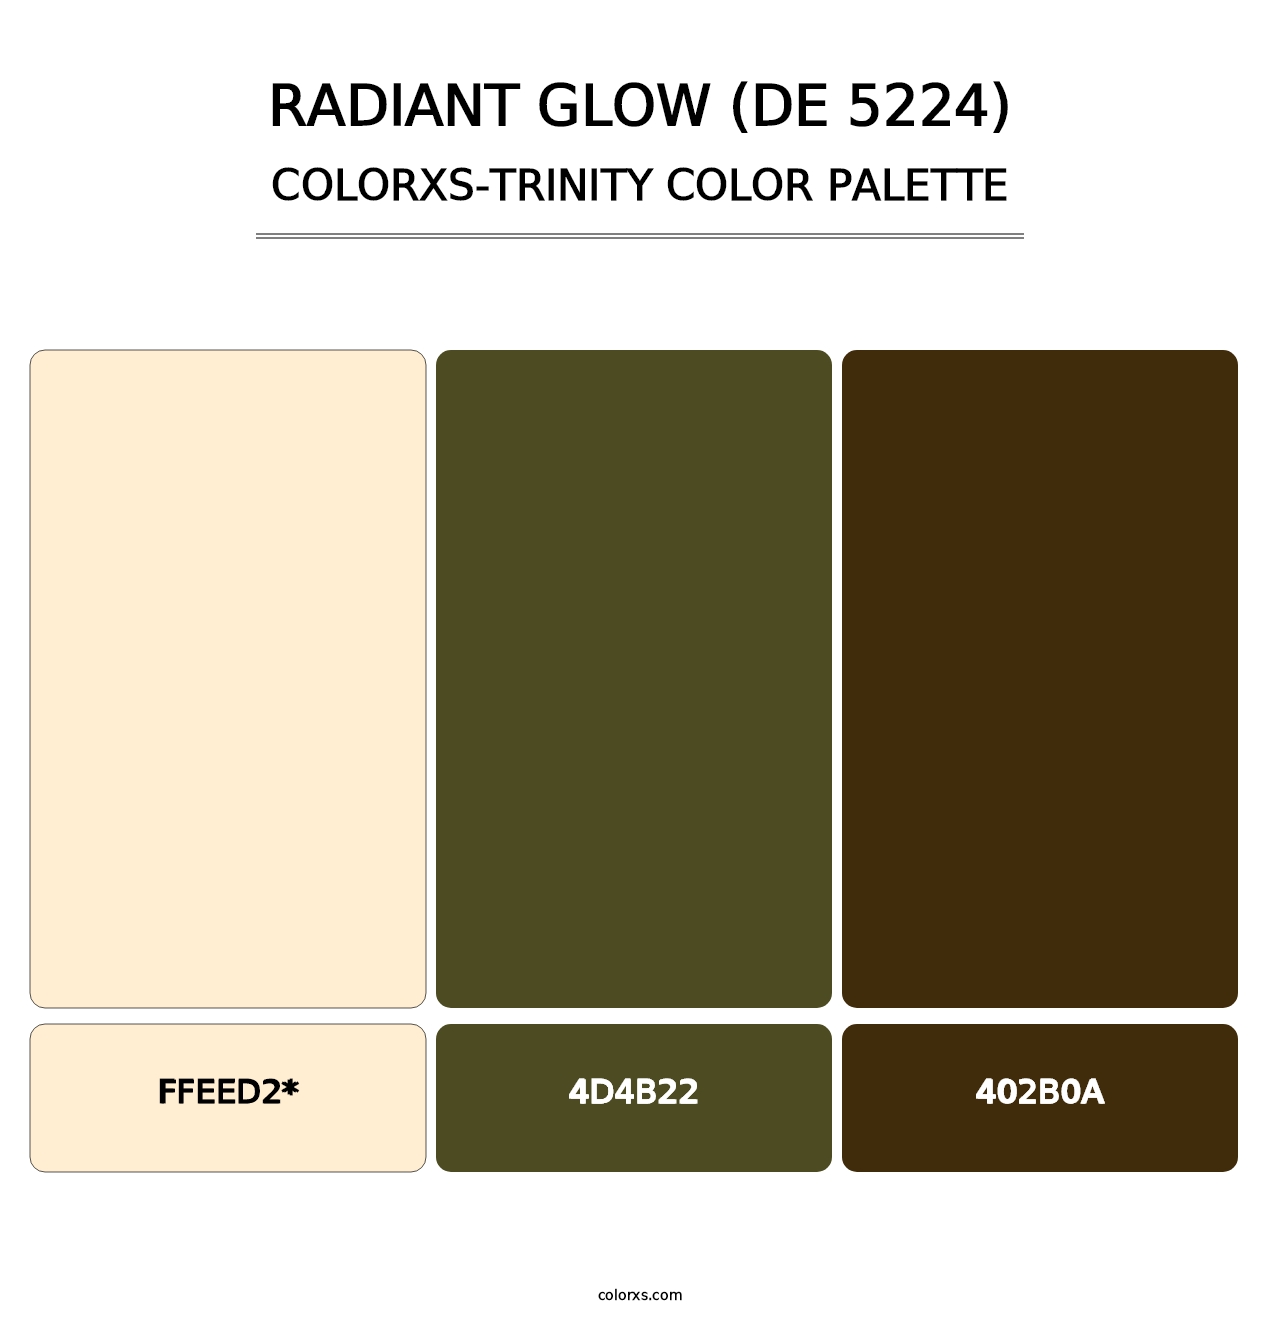 Radiant Glow (DE 5224) - Colorxs Trinity Palette